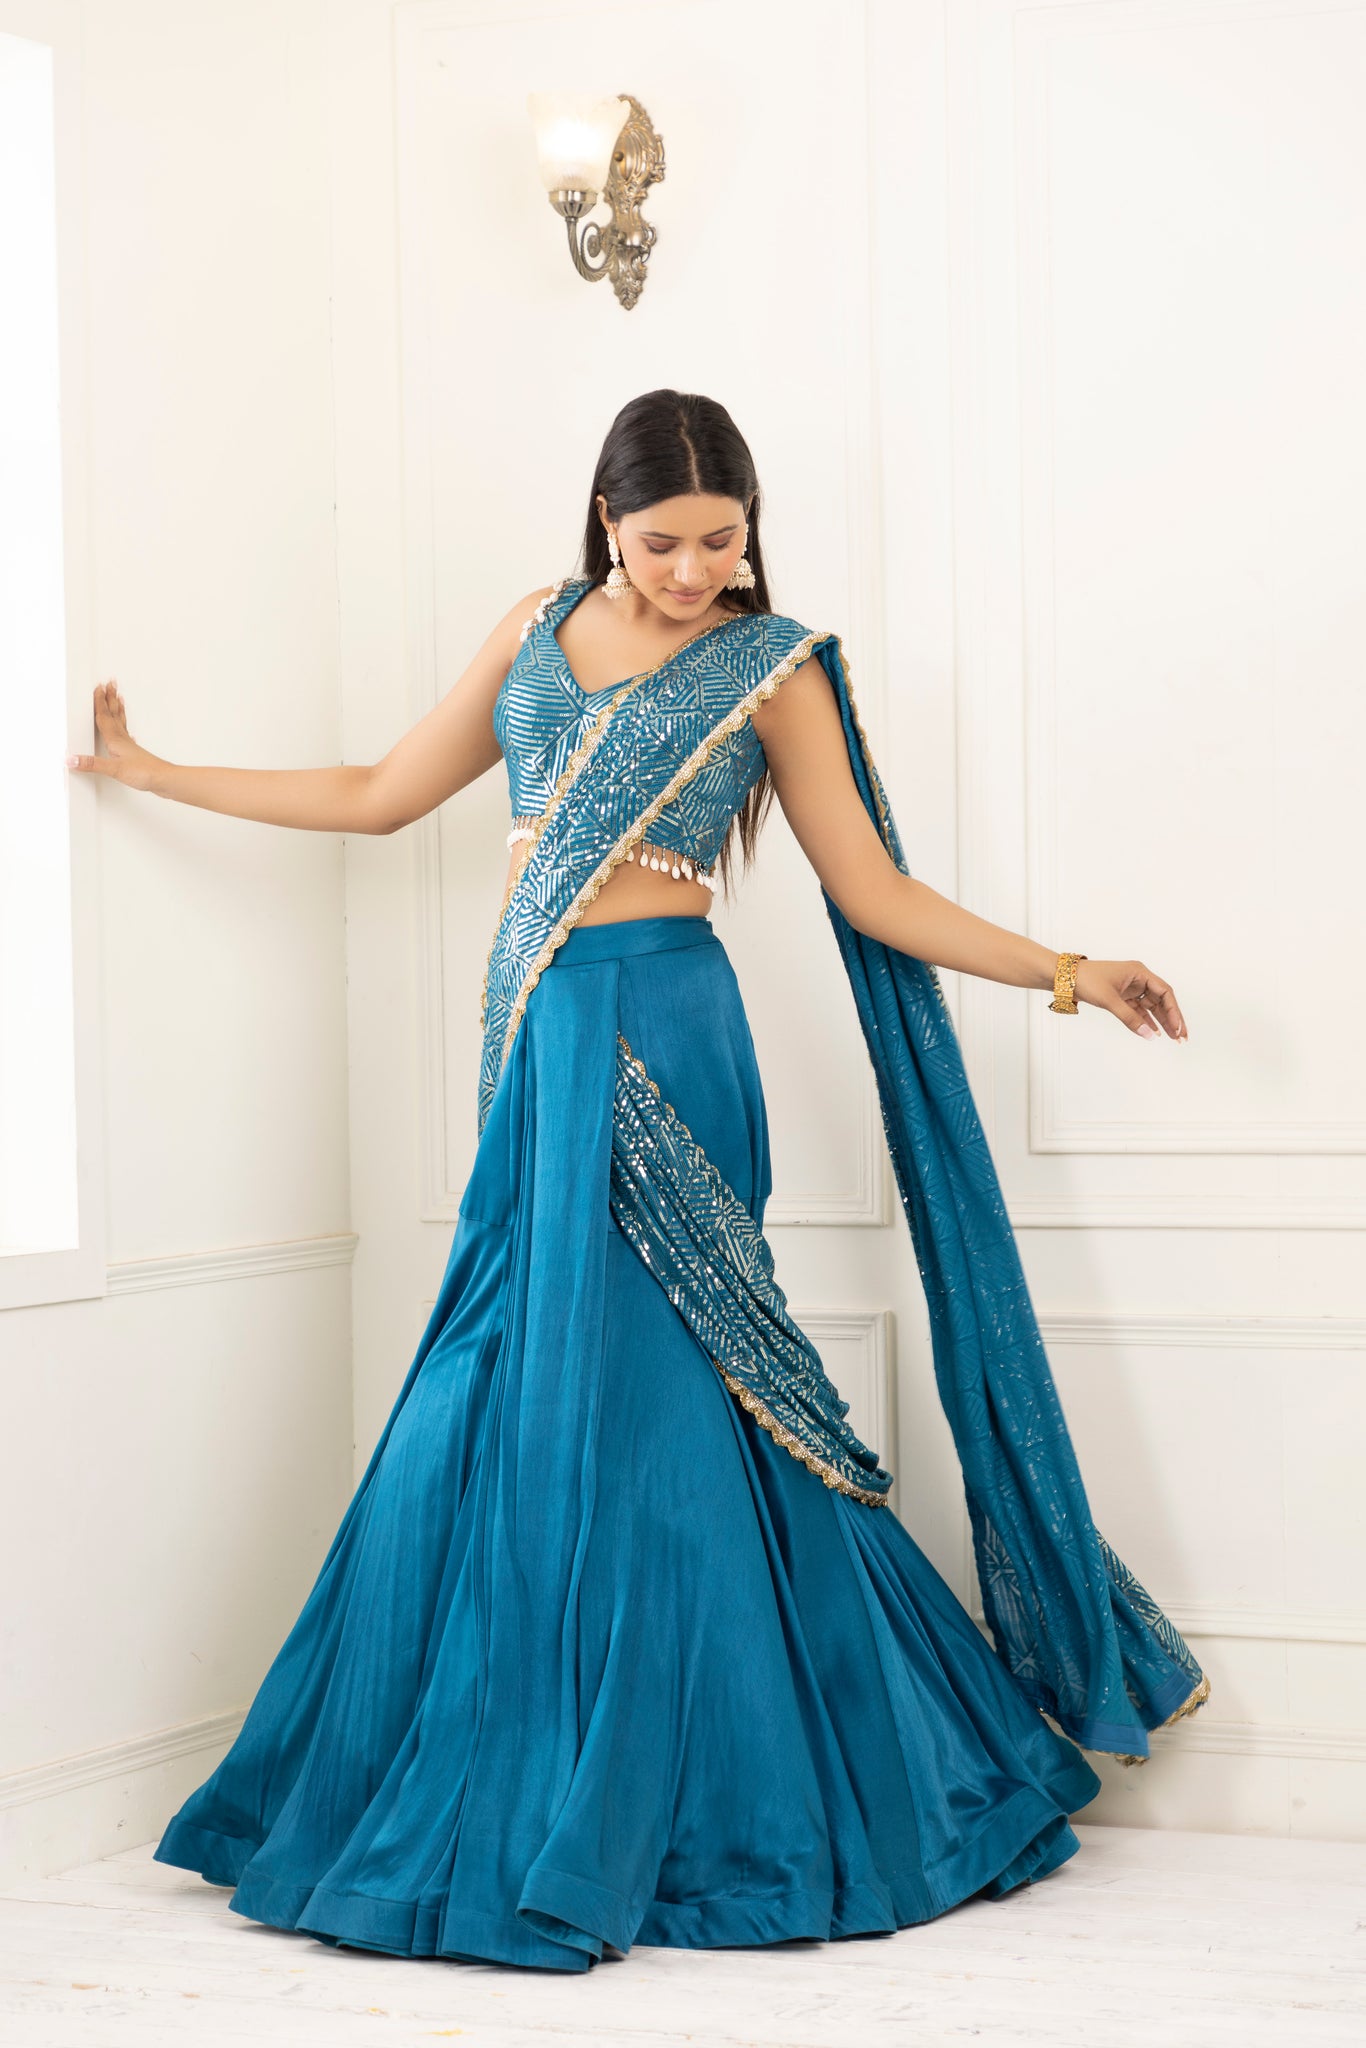 40 Elegant Half Saree Lehenga Designs For The South Indian Brides! | Half saree  lehenga, Wedding lehenga designs, Indian outfits lehenga